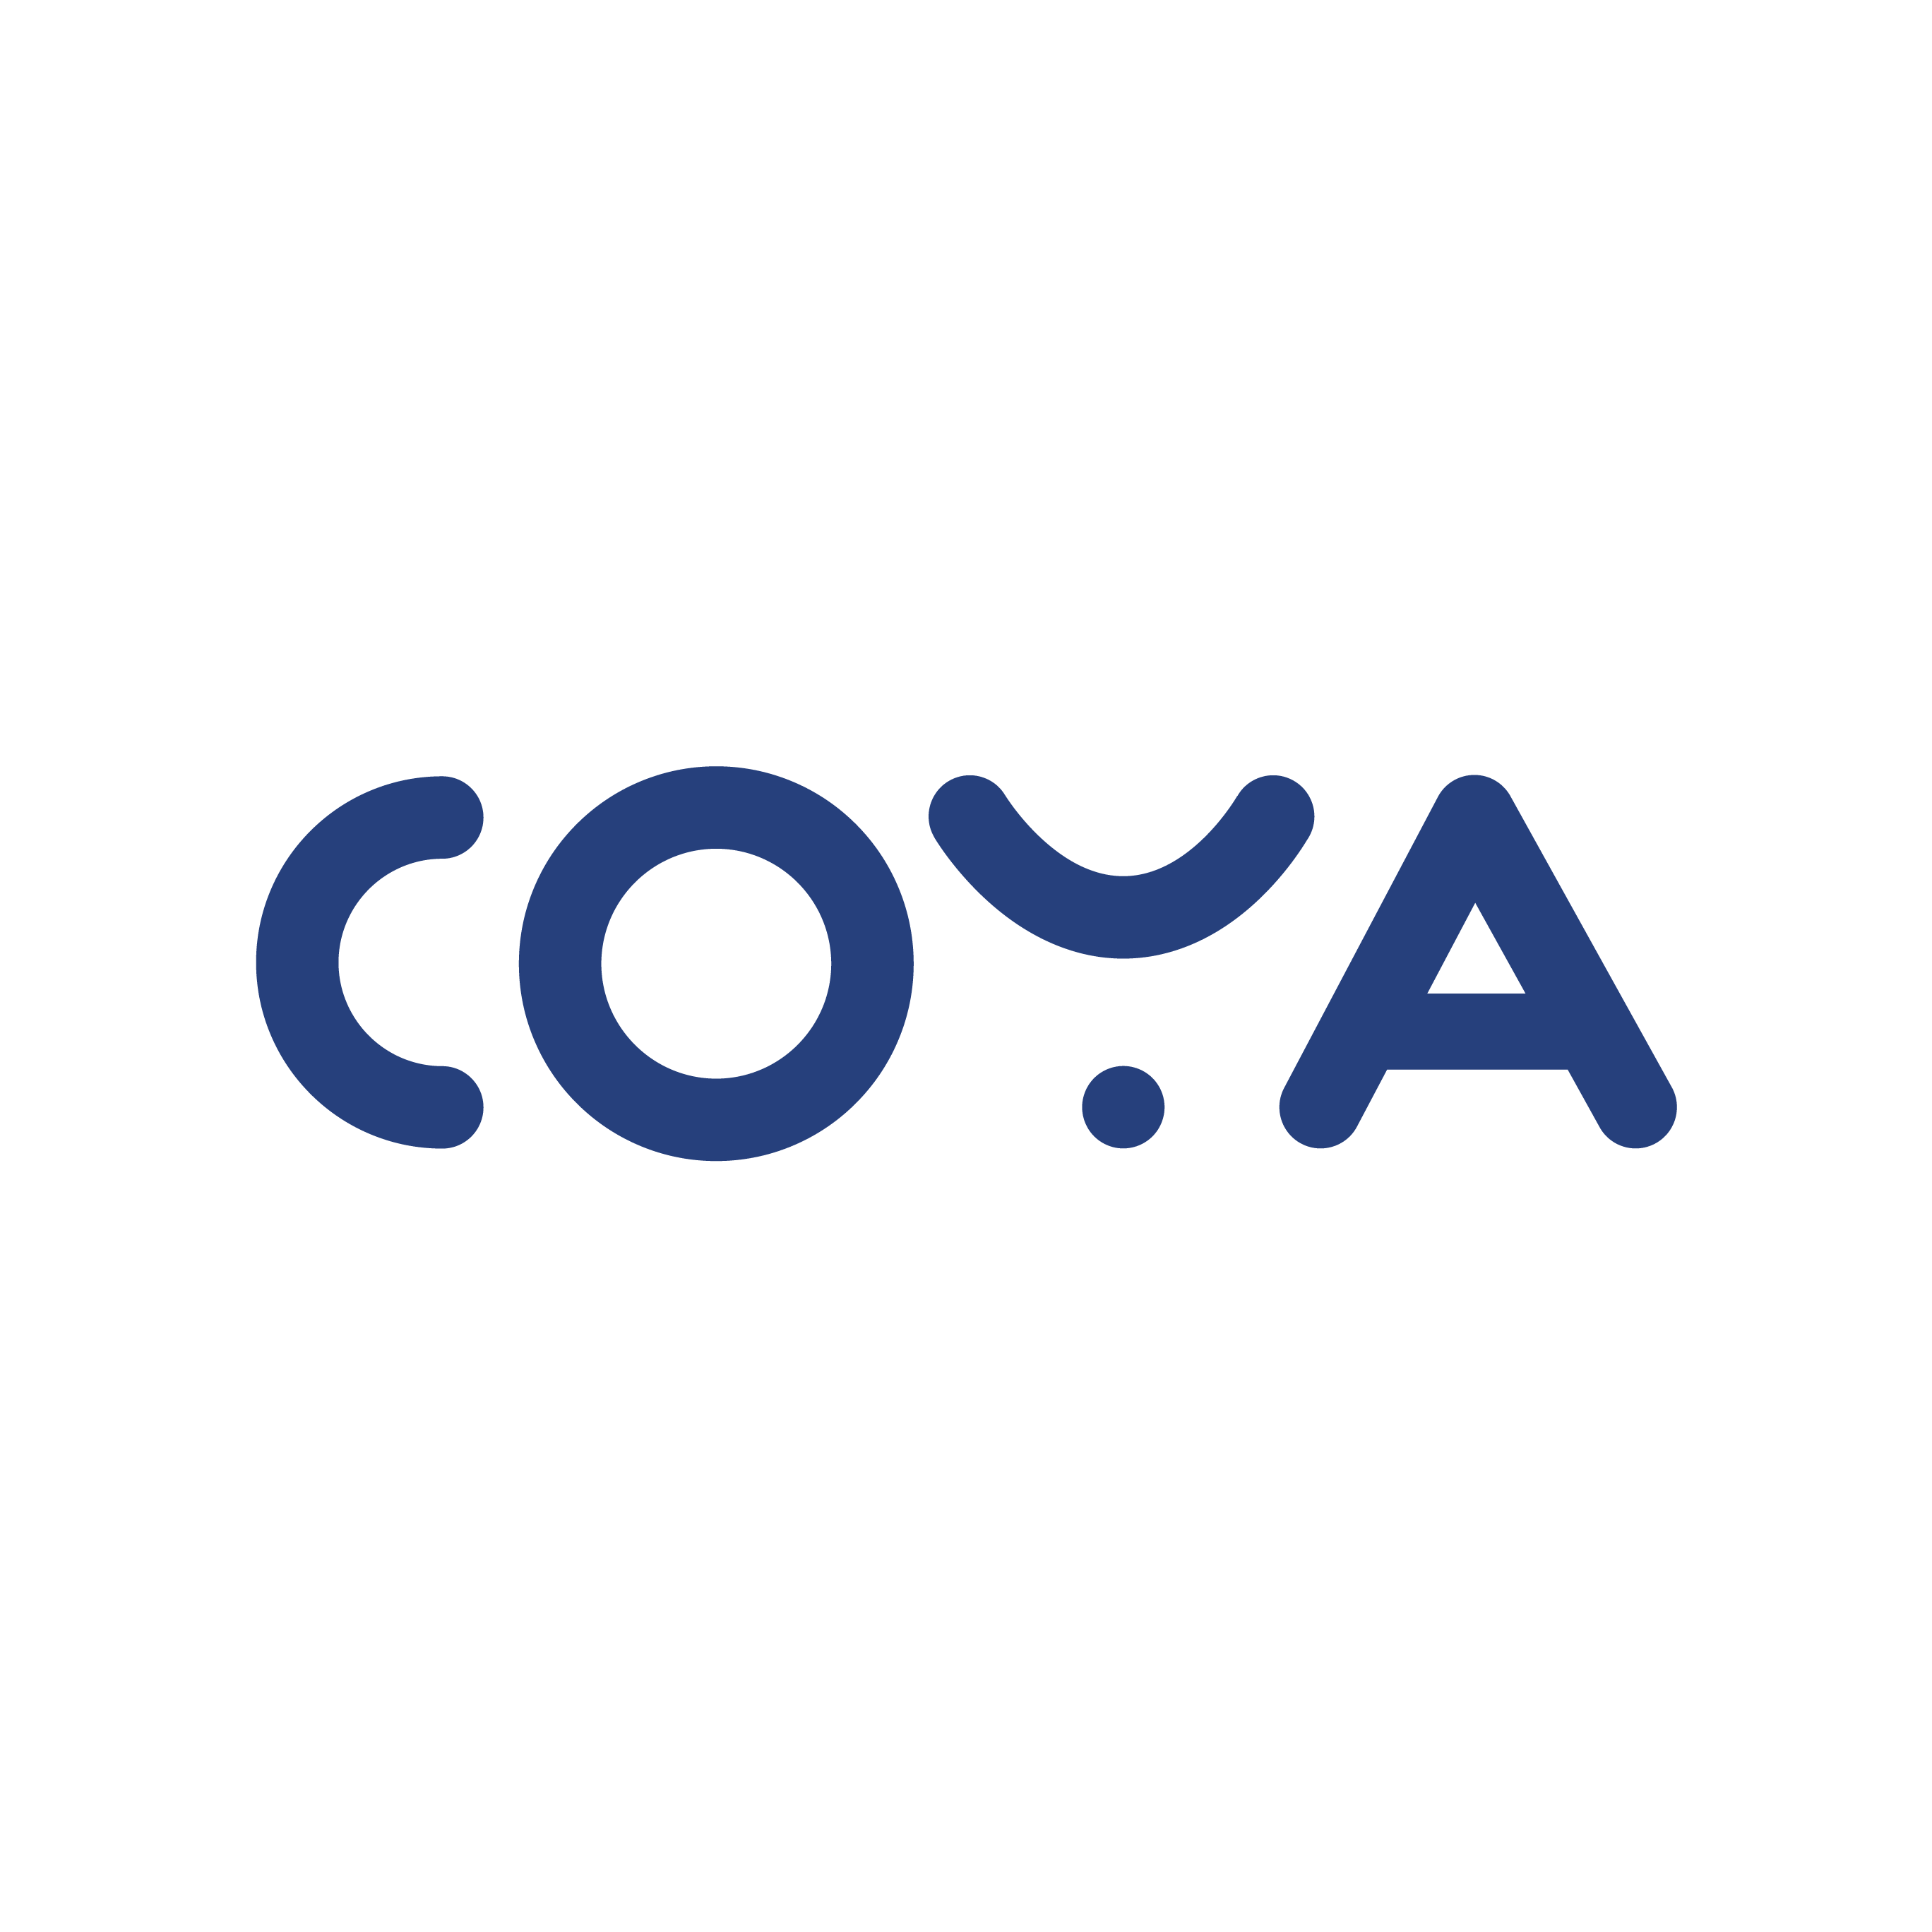 Coya's logo